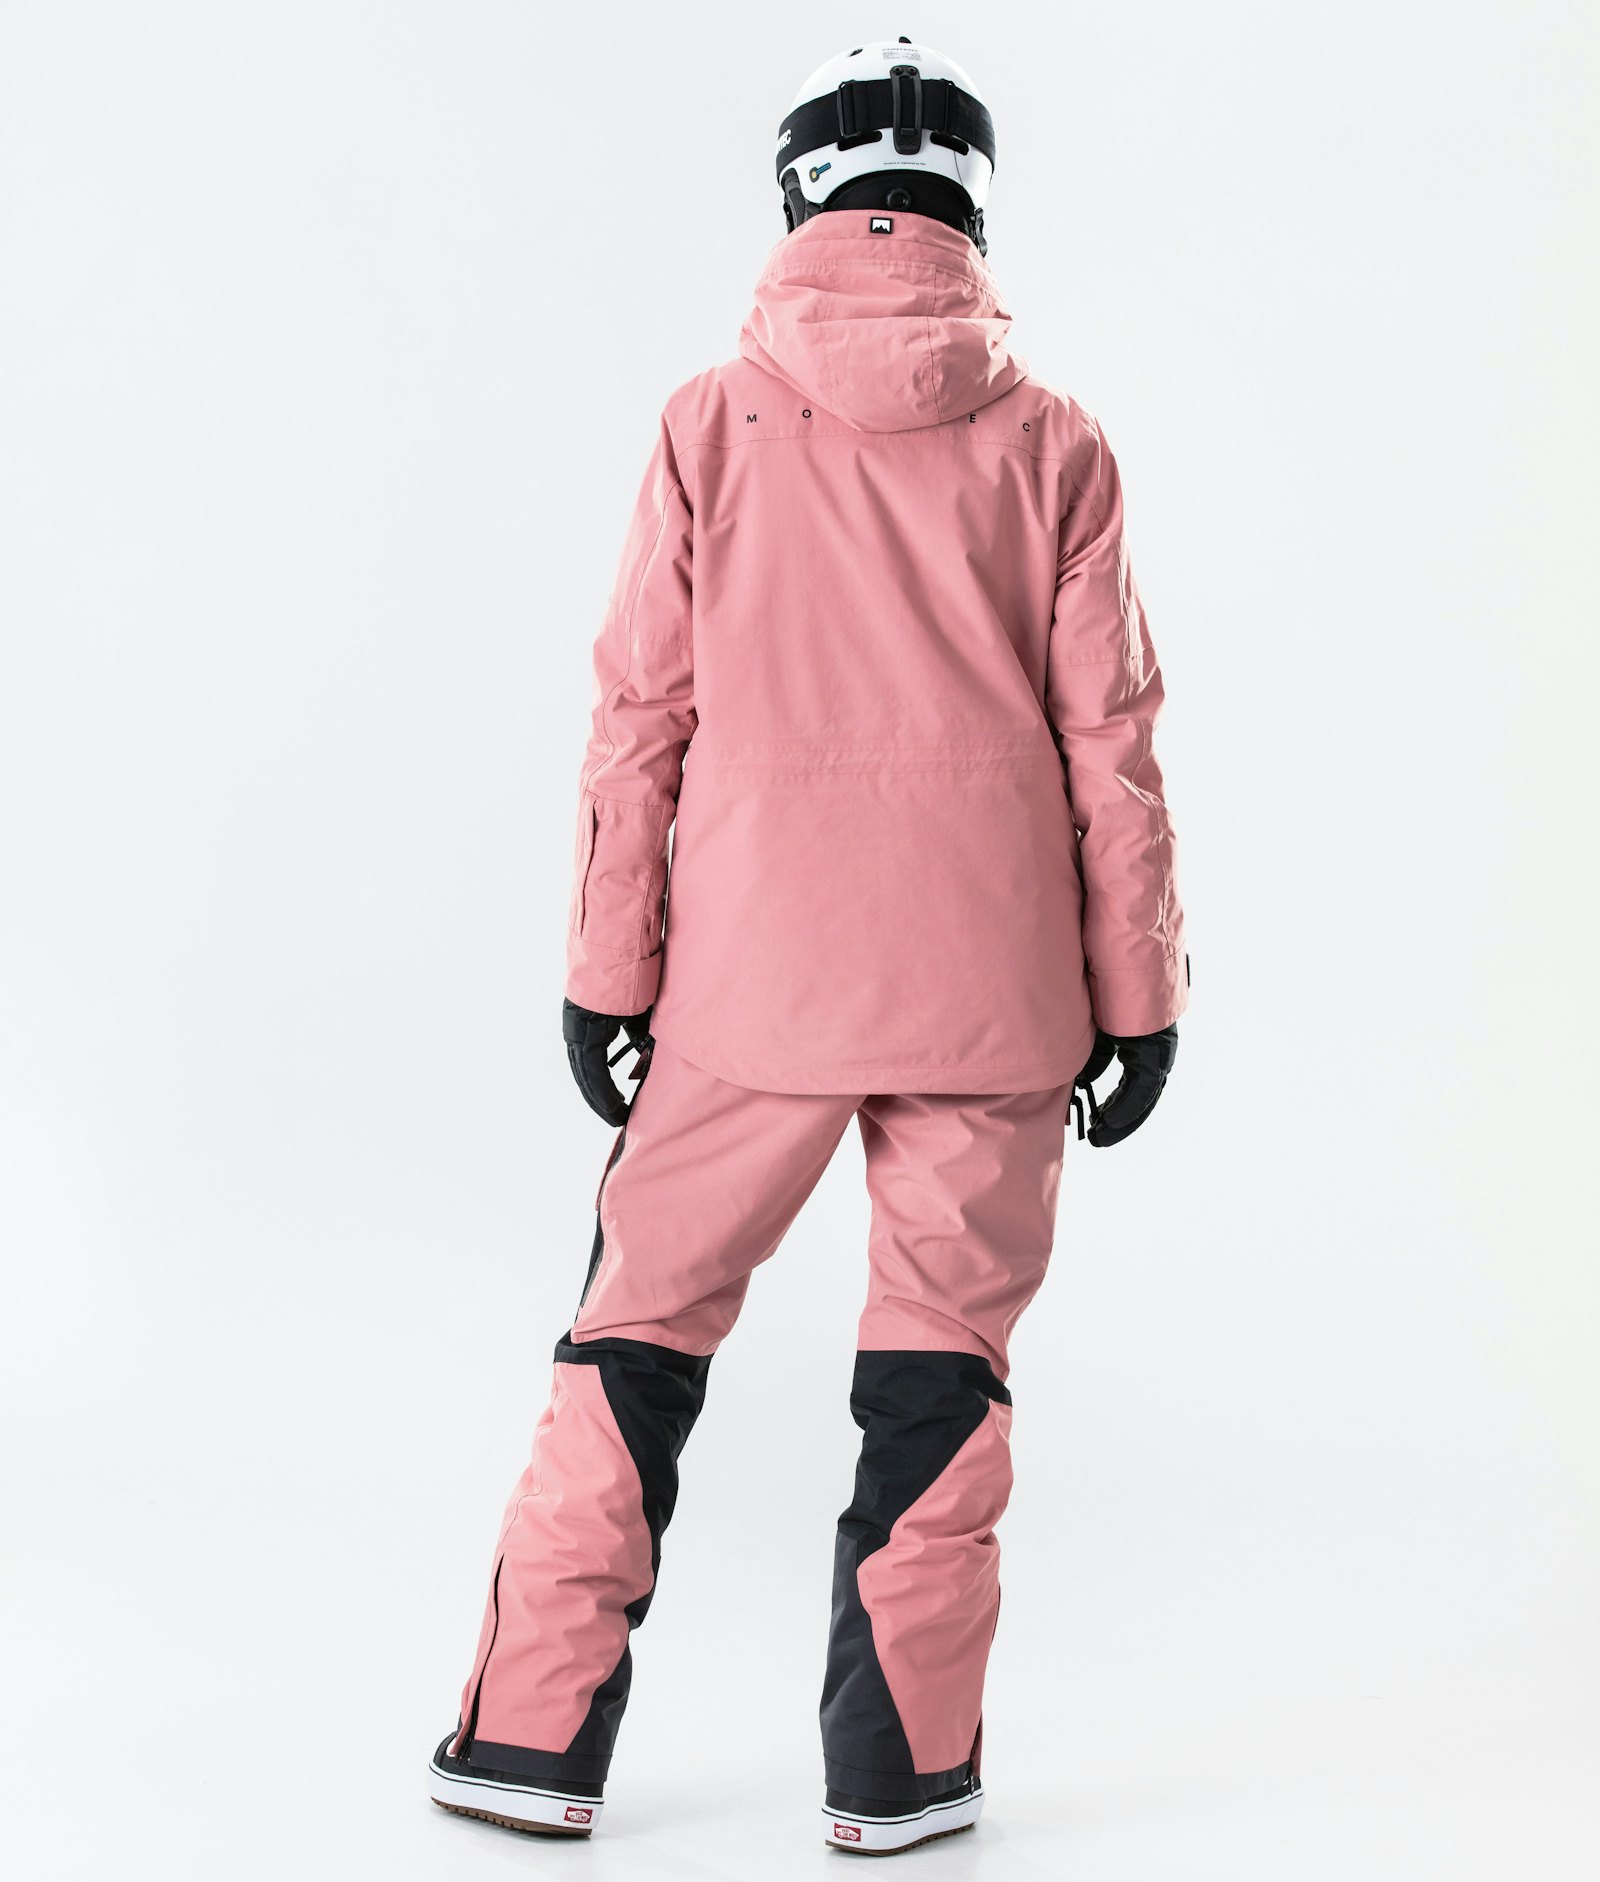 Fawk W 2020 Snowboardjakke Dame Pink